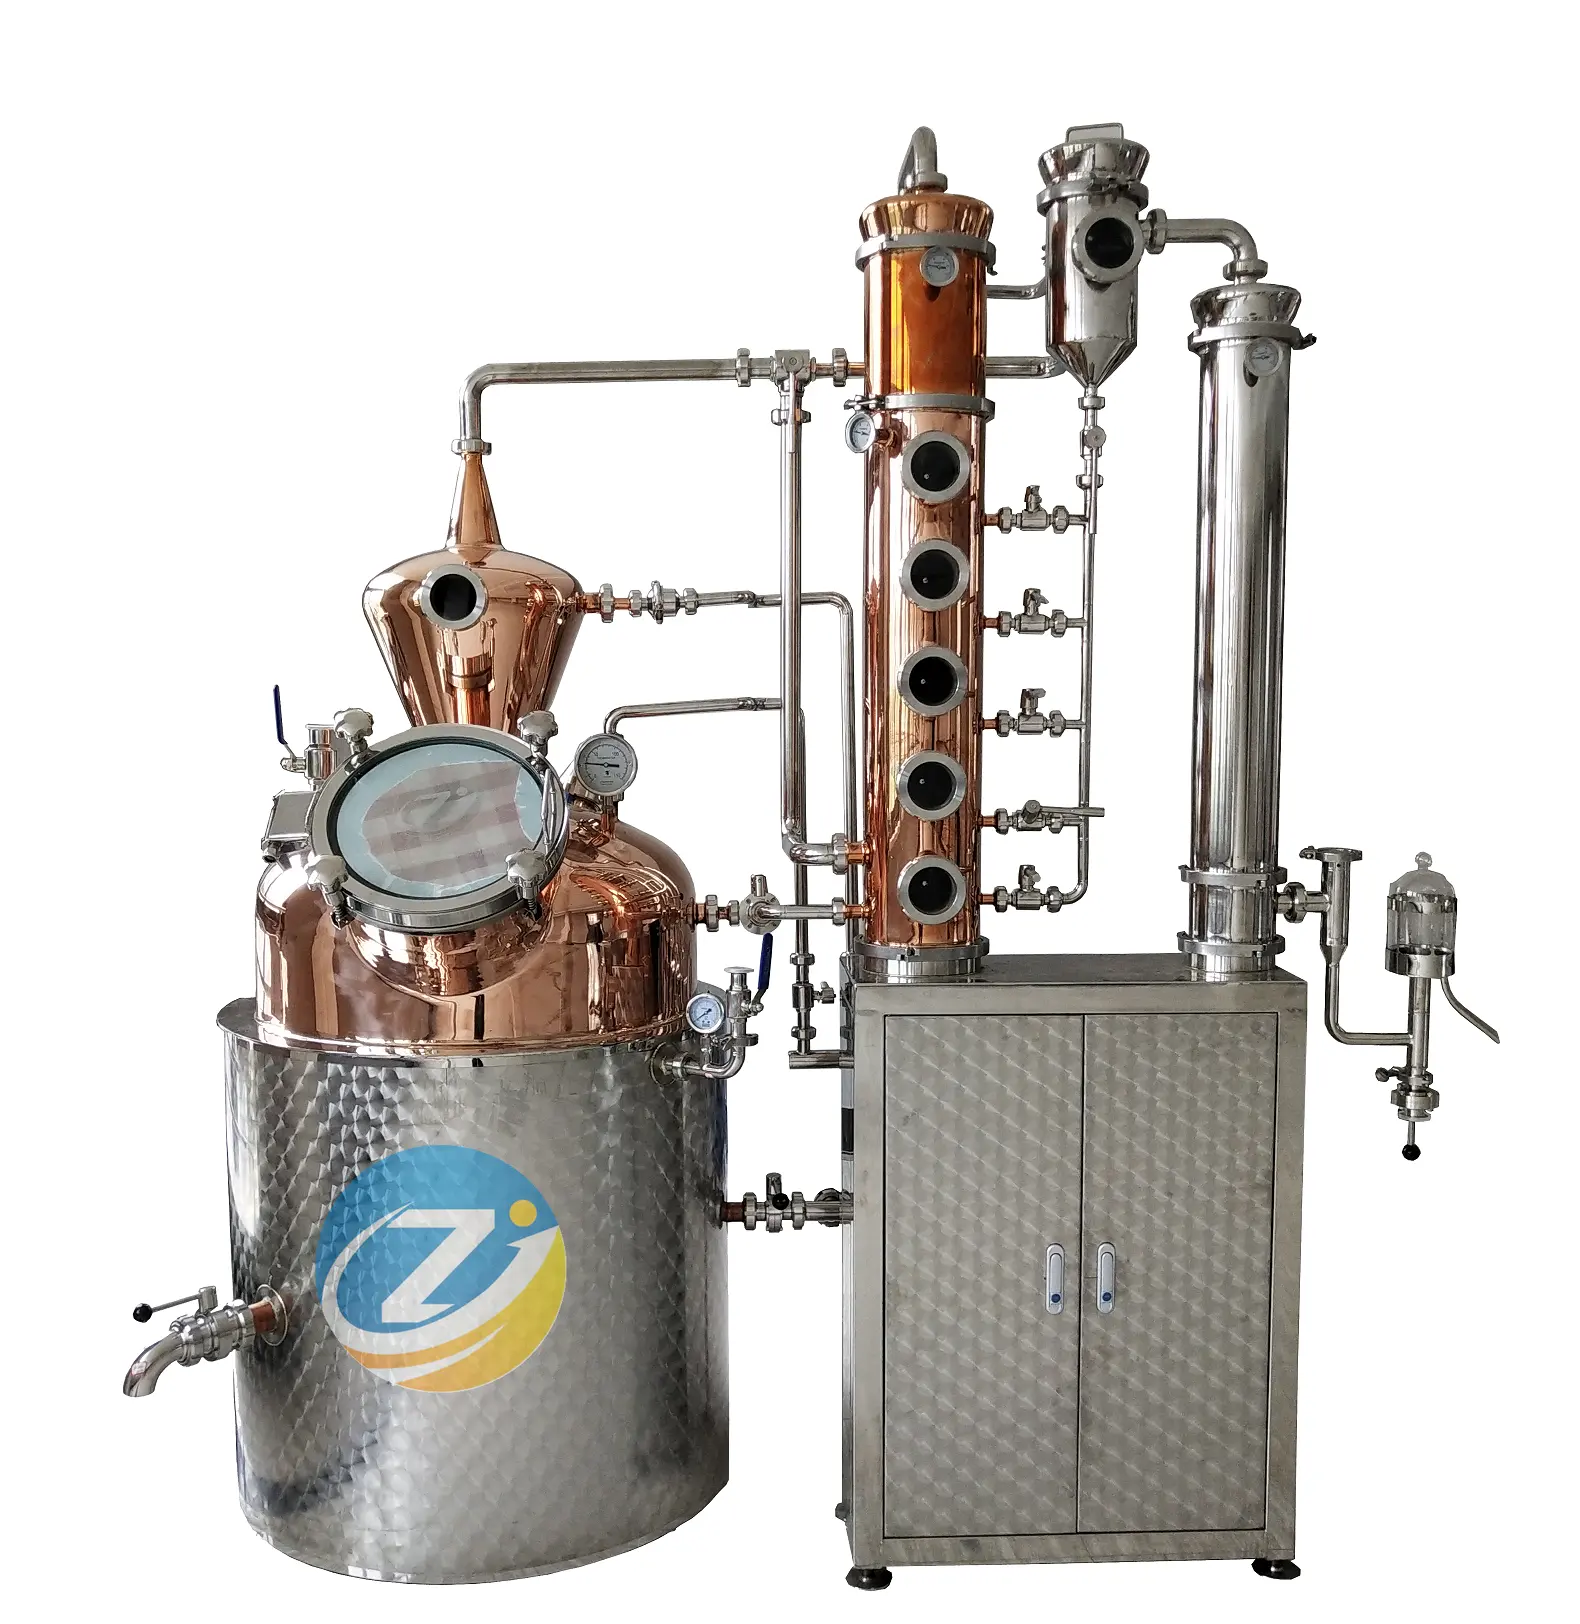 Nuovo mestiere condensatore a riflusso distillazione alcolica alambicchi rame destilaria rum distillery equipment